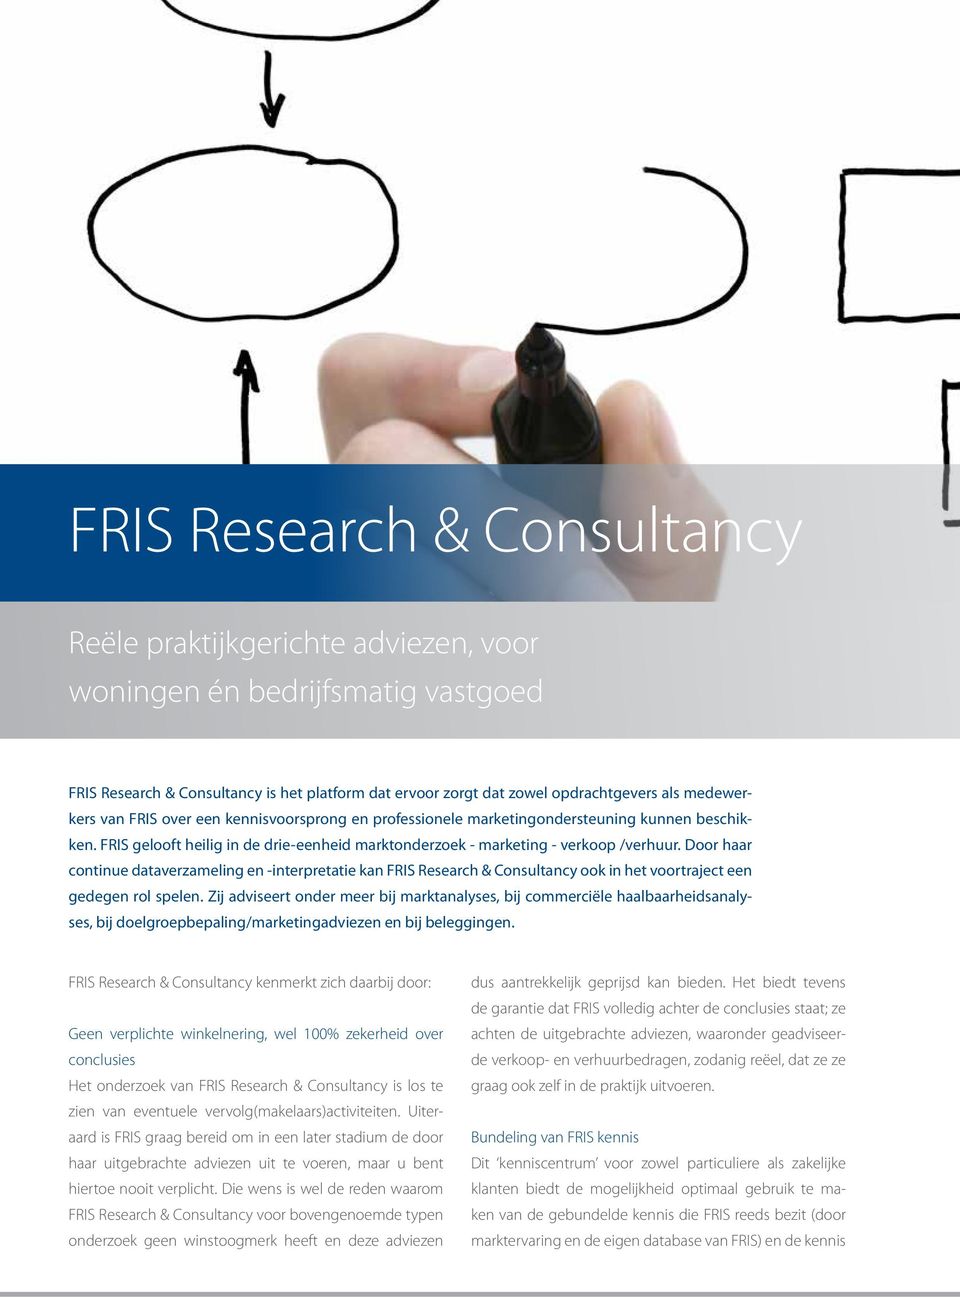 Door haar continue dataverzameling en -interpretatie kan FRIS Research & Consultancy ook in het voortraject een gedegen rol spelen.